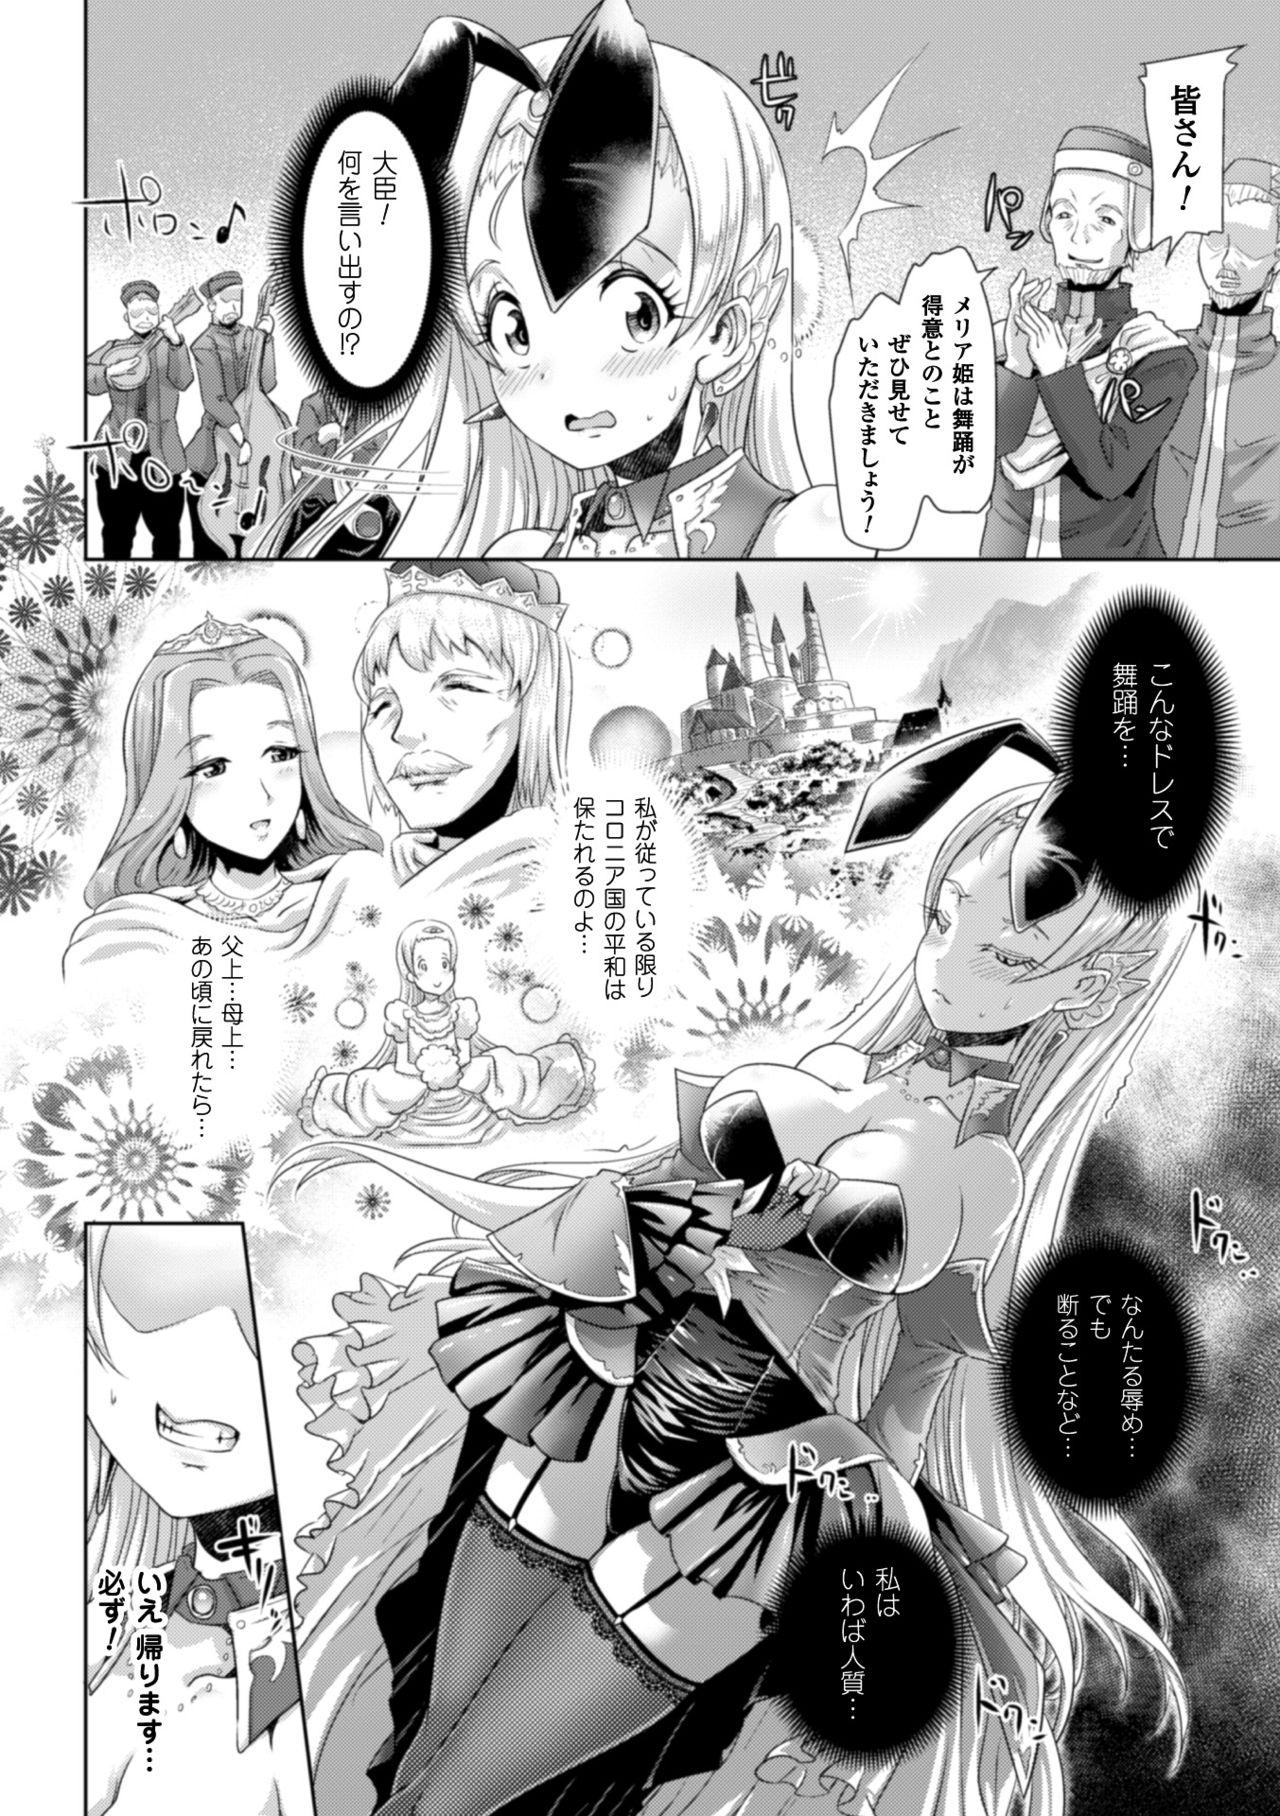 Interracial Hardcore 2D Comic Magazine Waki Feti Bunny Girl Vol. 2 Fudendo - Page 6